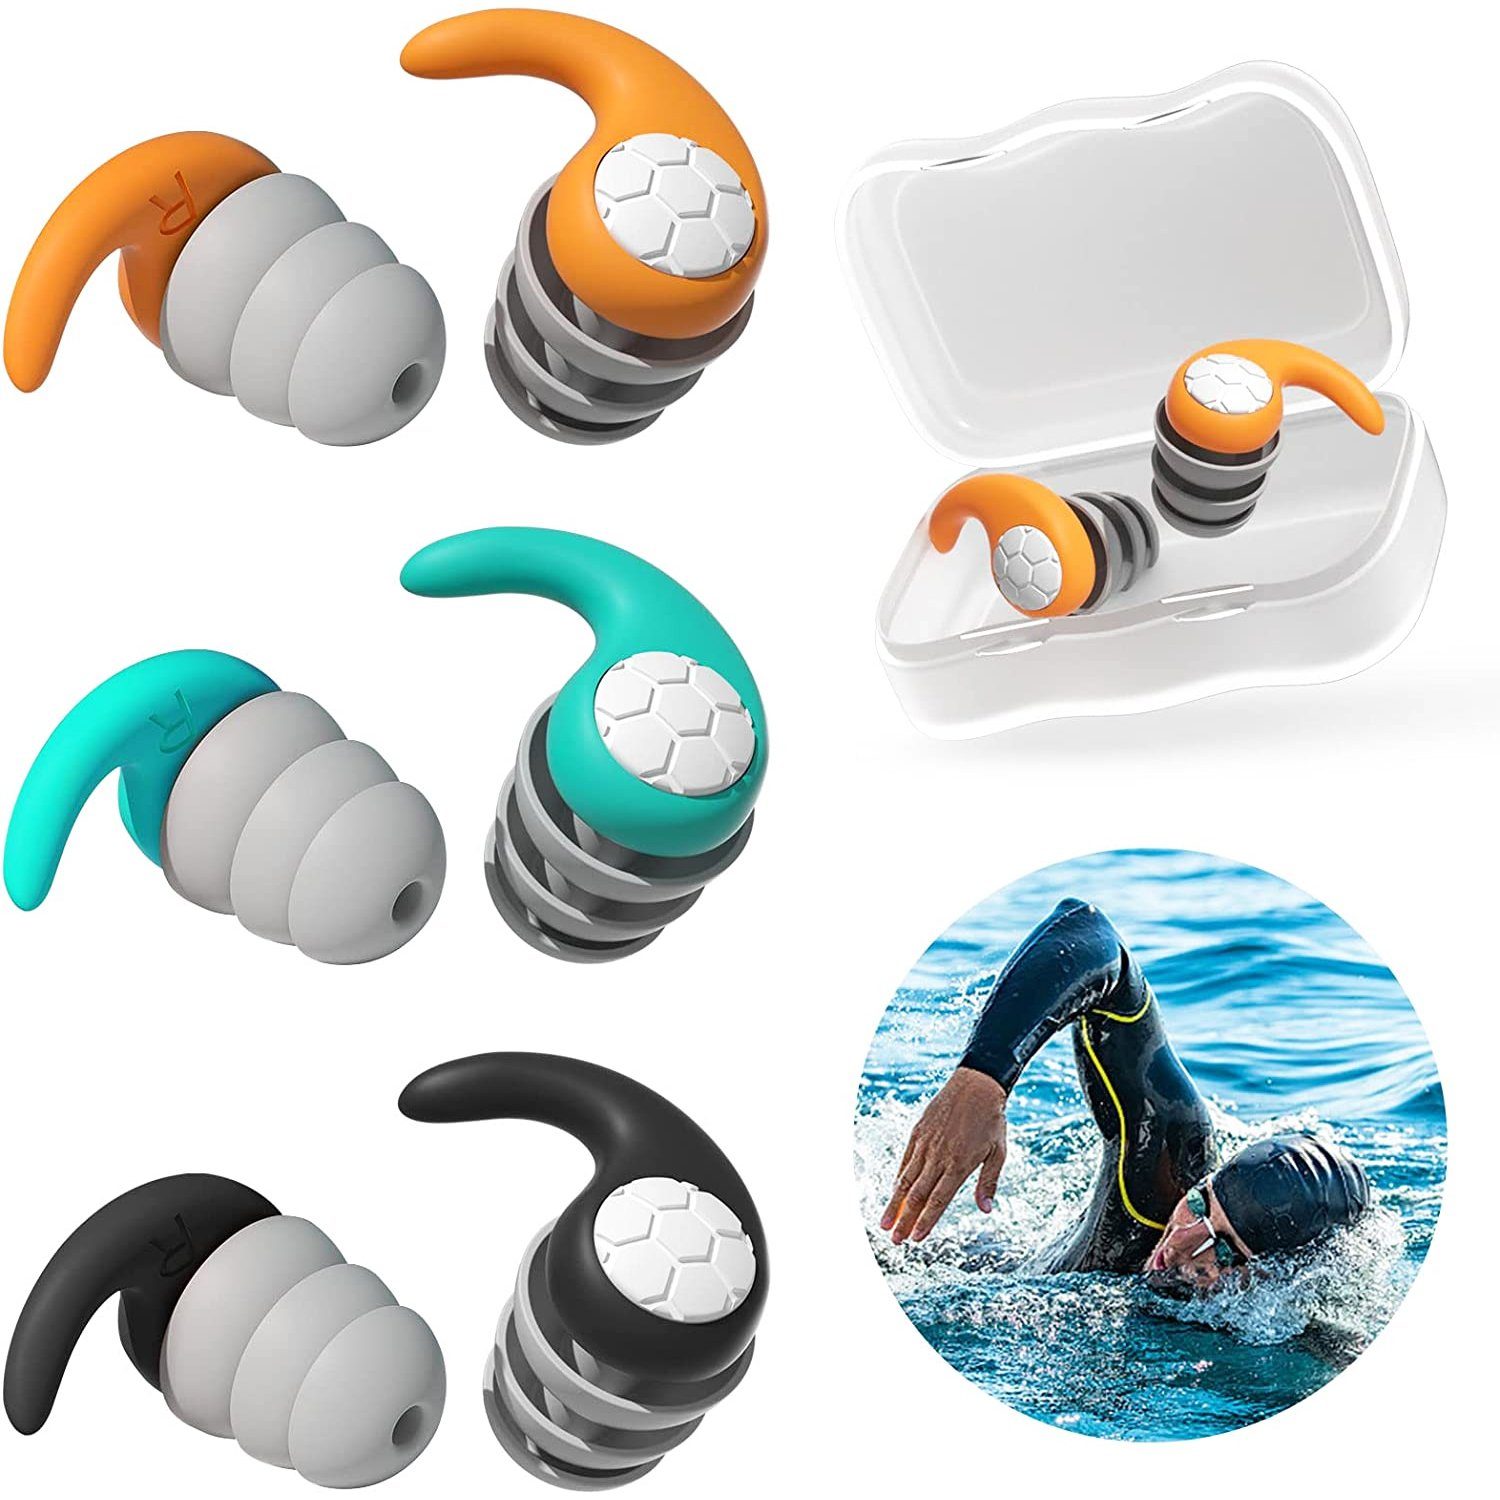 [Weiterhin beliebt] NUODWELL Schwimm-Ohrstöpsel 3 Paar Ohrenschutz Schwimmen Erwachsene Wasserdichte Silikon